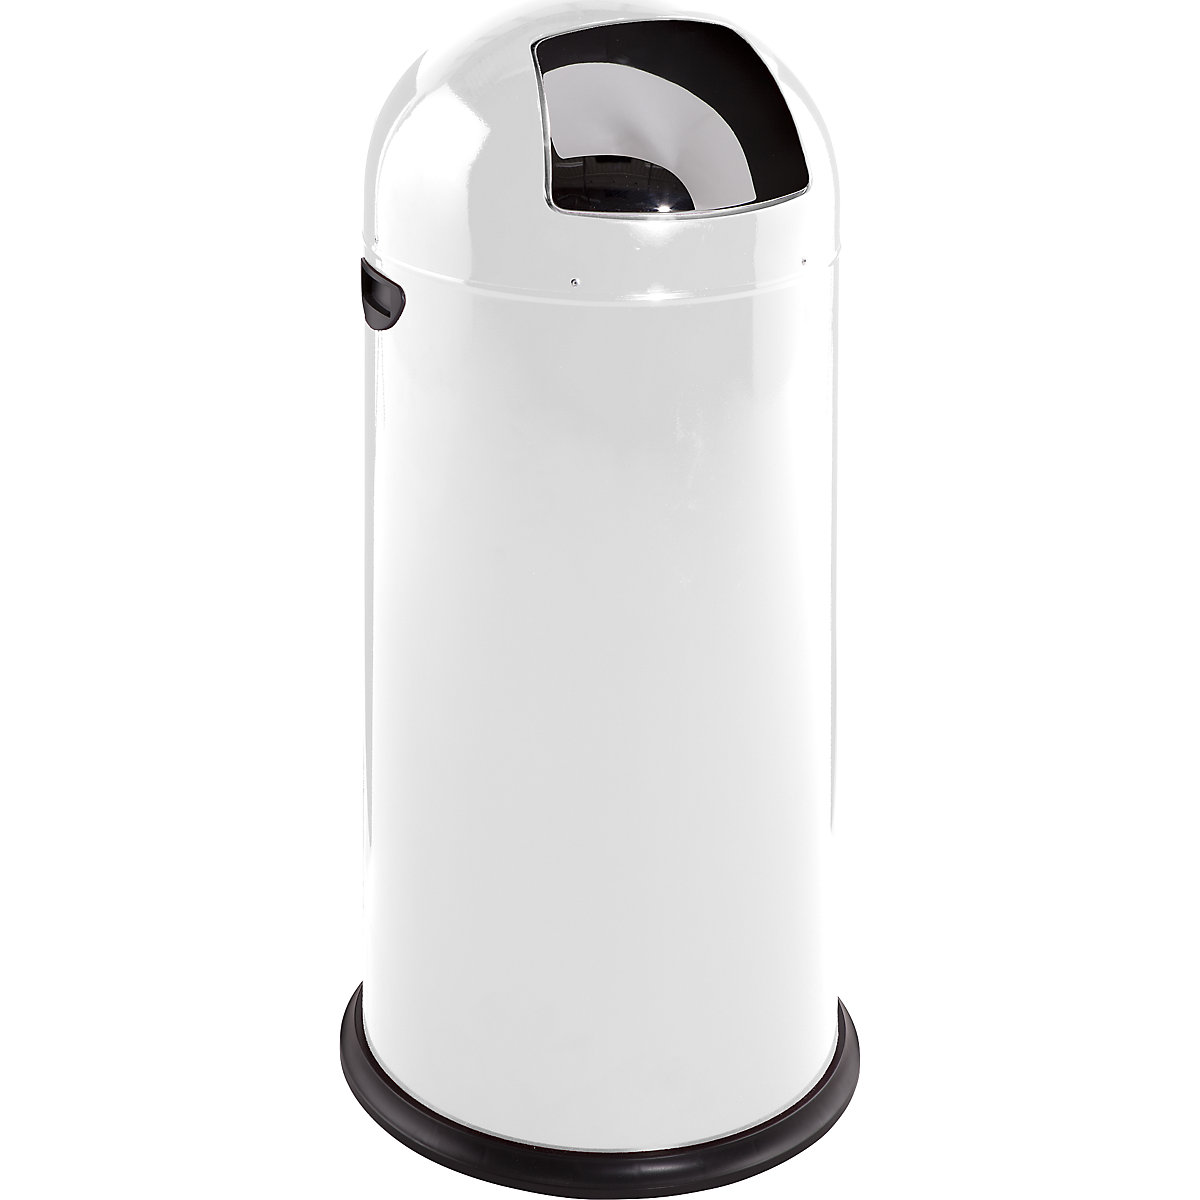 VAR – Odpadkový koš s funkcí Push, objem 52 l, výška 890 mm, bílá